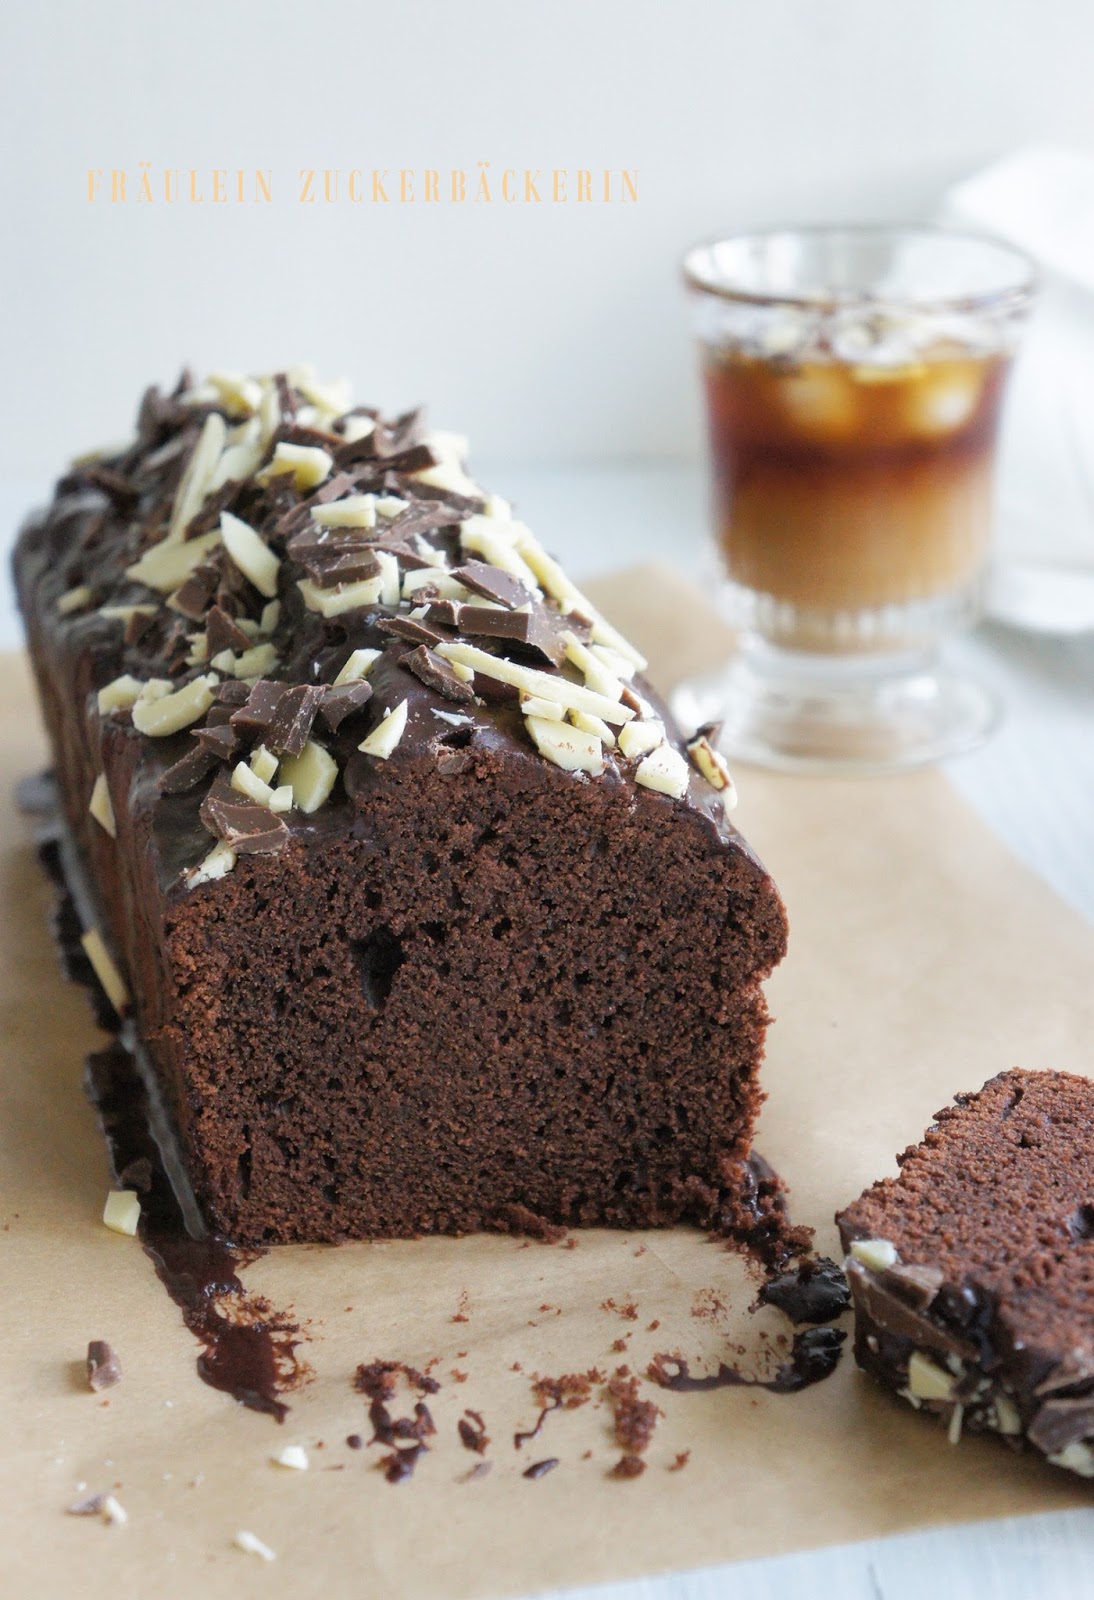 Fräulein Zuckerbäckerin: Schoko-Kaffee Kuchen und ein süßes Maschinchen